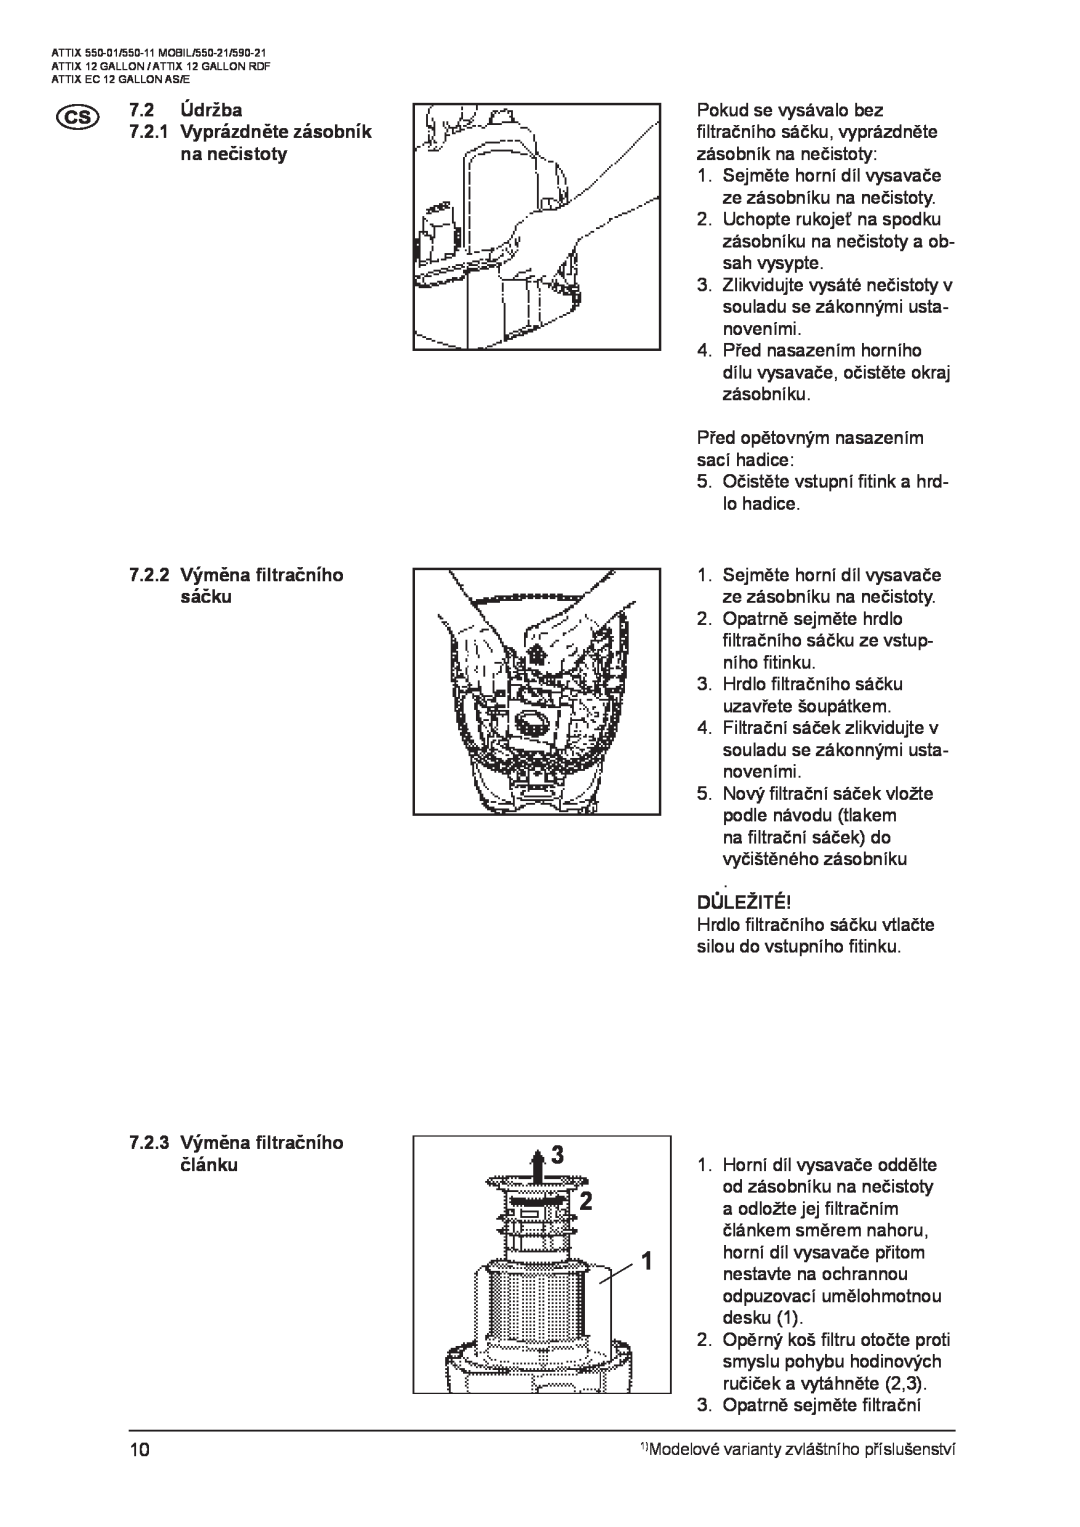 Nilfisk-ALTO ATTIX 550-01 manual 7.2Údržba 7.2.1Vyprázdněte zásobník na nečistoty, 7.2.2Výměna ﬁltračního sáčku, Důležité 